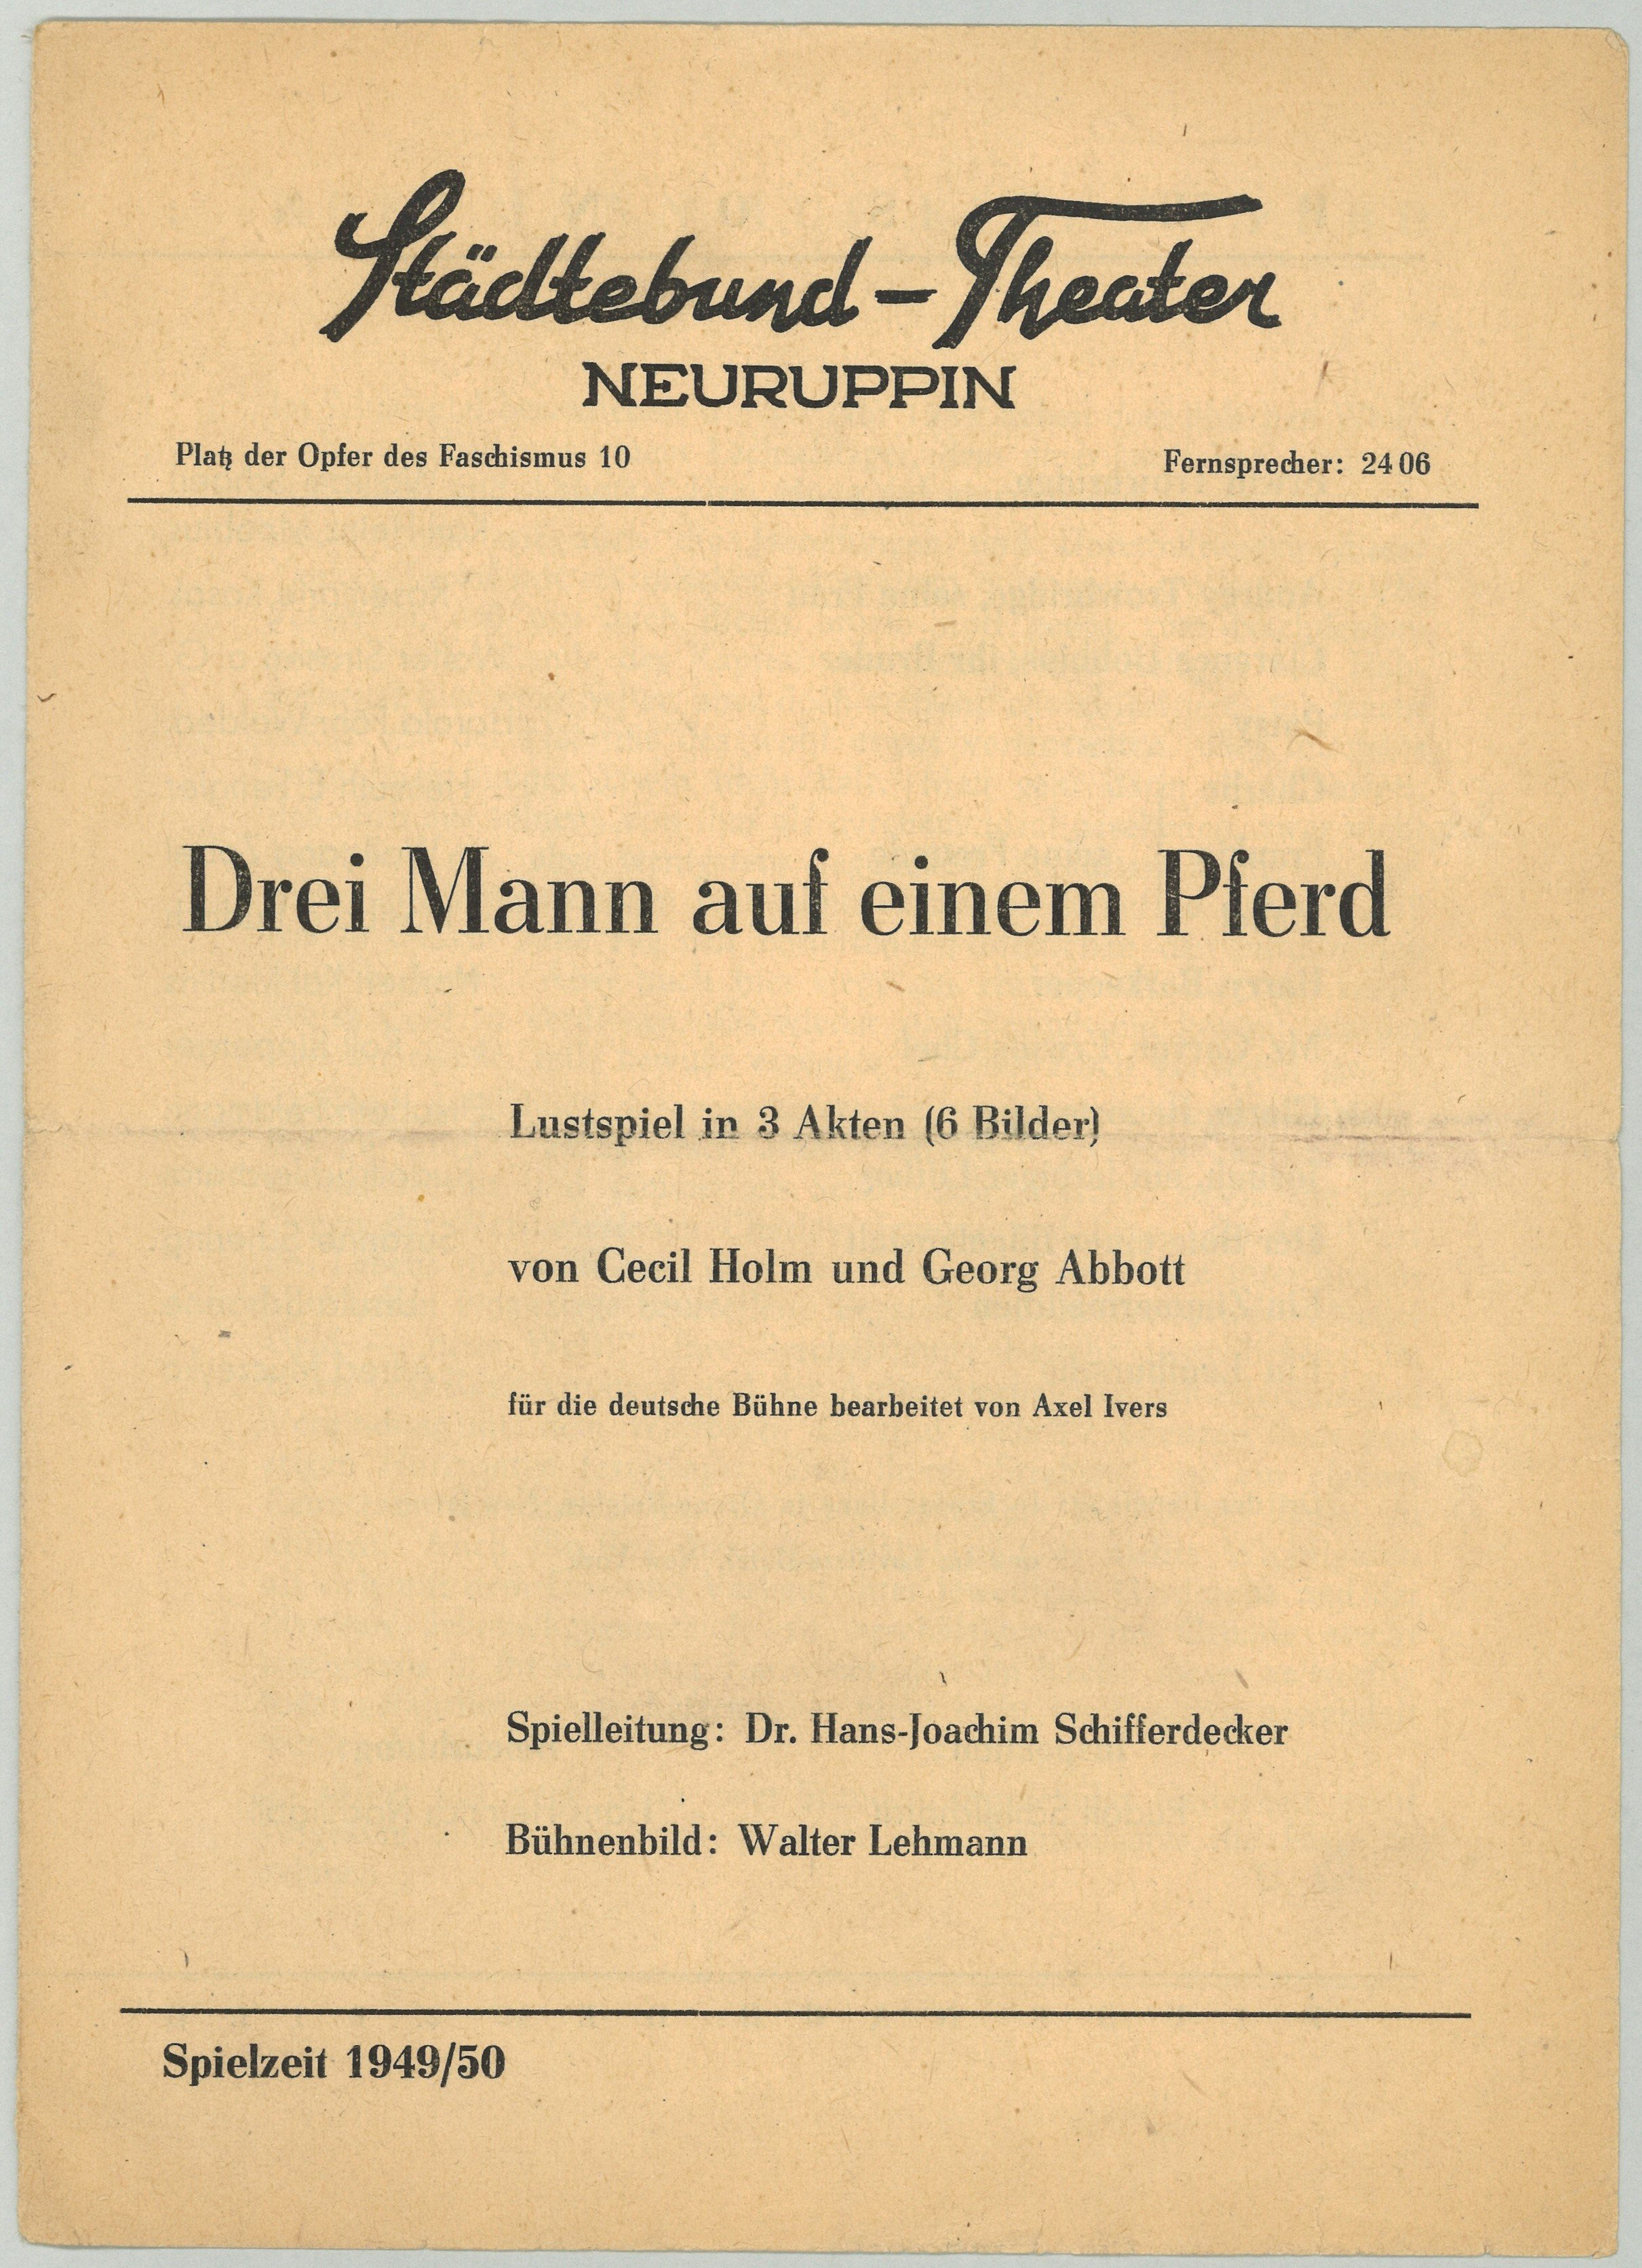 Städtebund-Theater Neuruppin, Spielzeit 1949/50: "Drei Mann auf einem Pferd" (Landesgeschichtliche Vereinigung für die Mark Brandenburg e.V., Archiv CC BY)